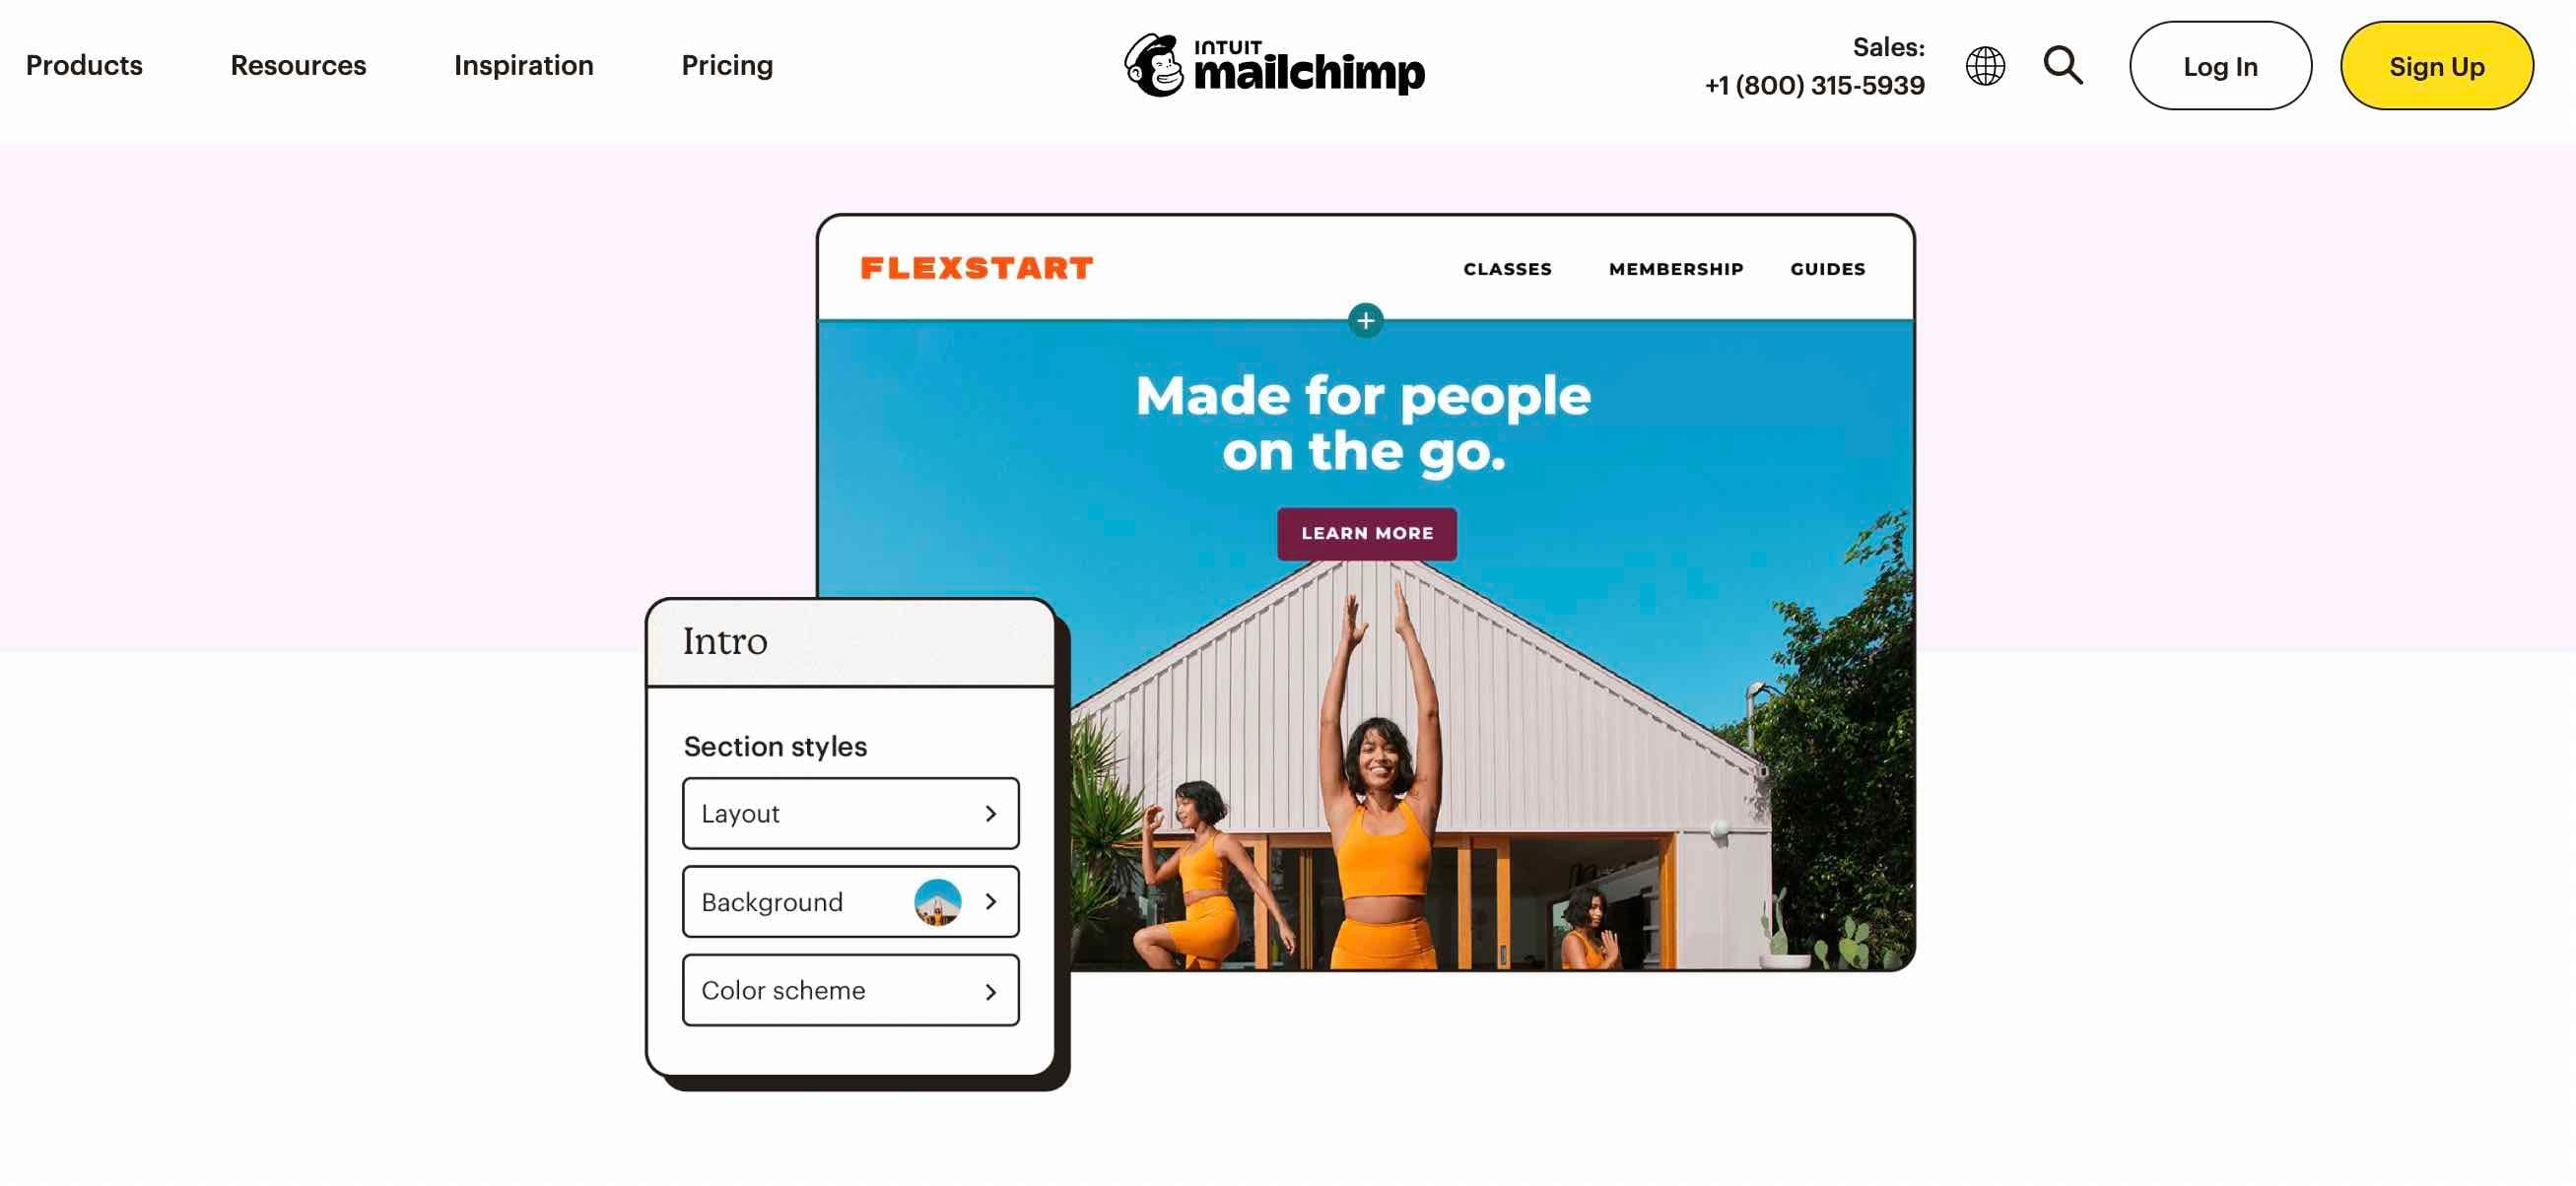 무료 웹사이트 빌더인 MailChimp는 무료 기본 웹사이트 구축을 포함하여 모든 마케팅을 위한 원스톱 상점입니다.